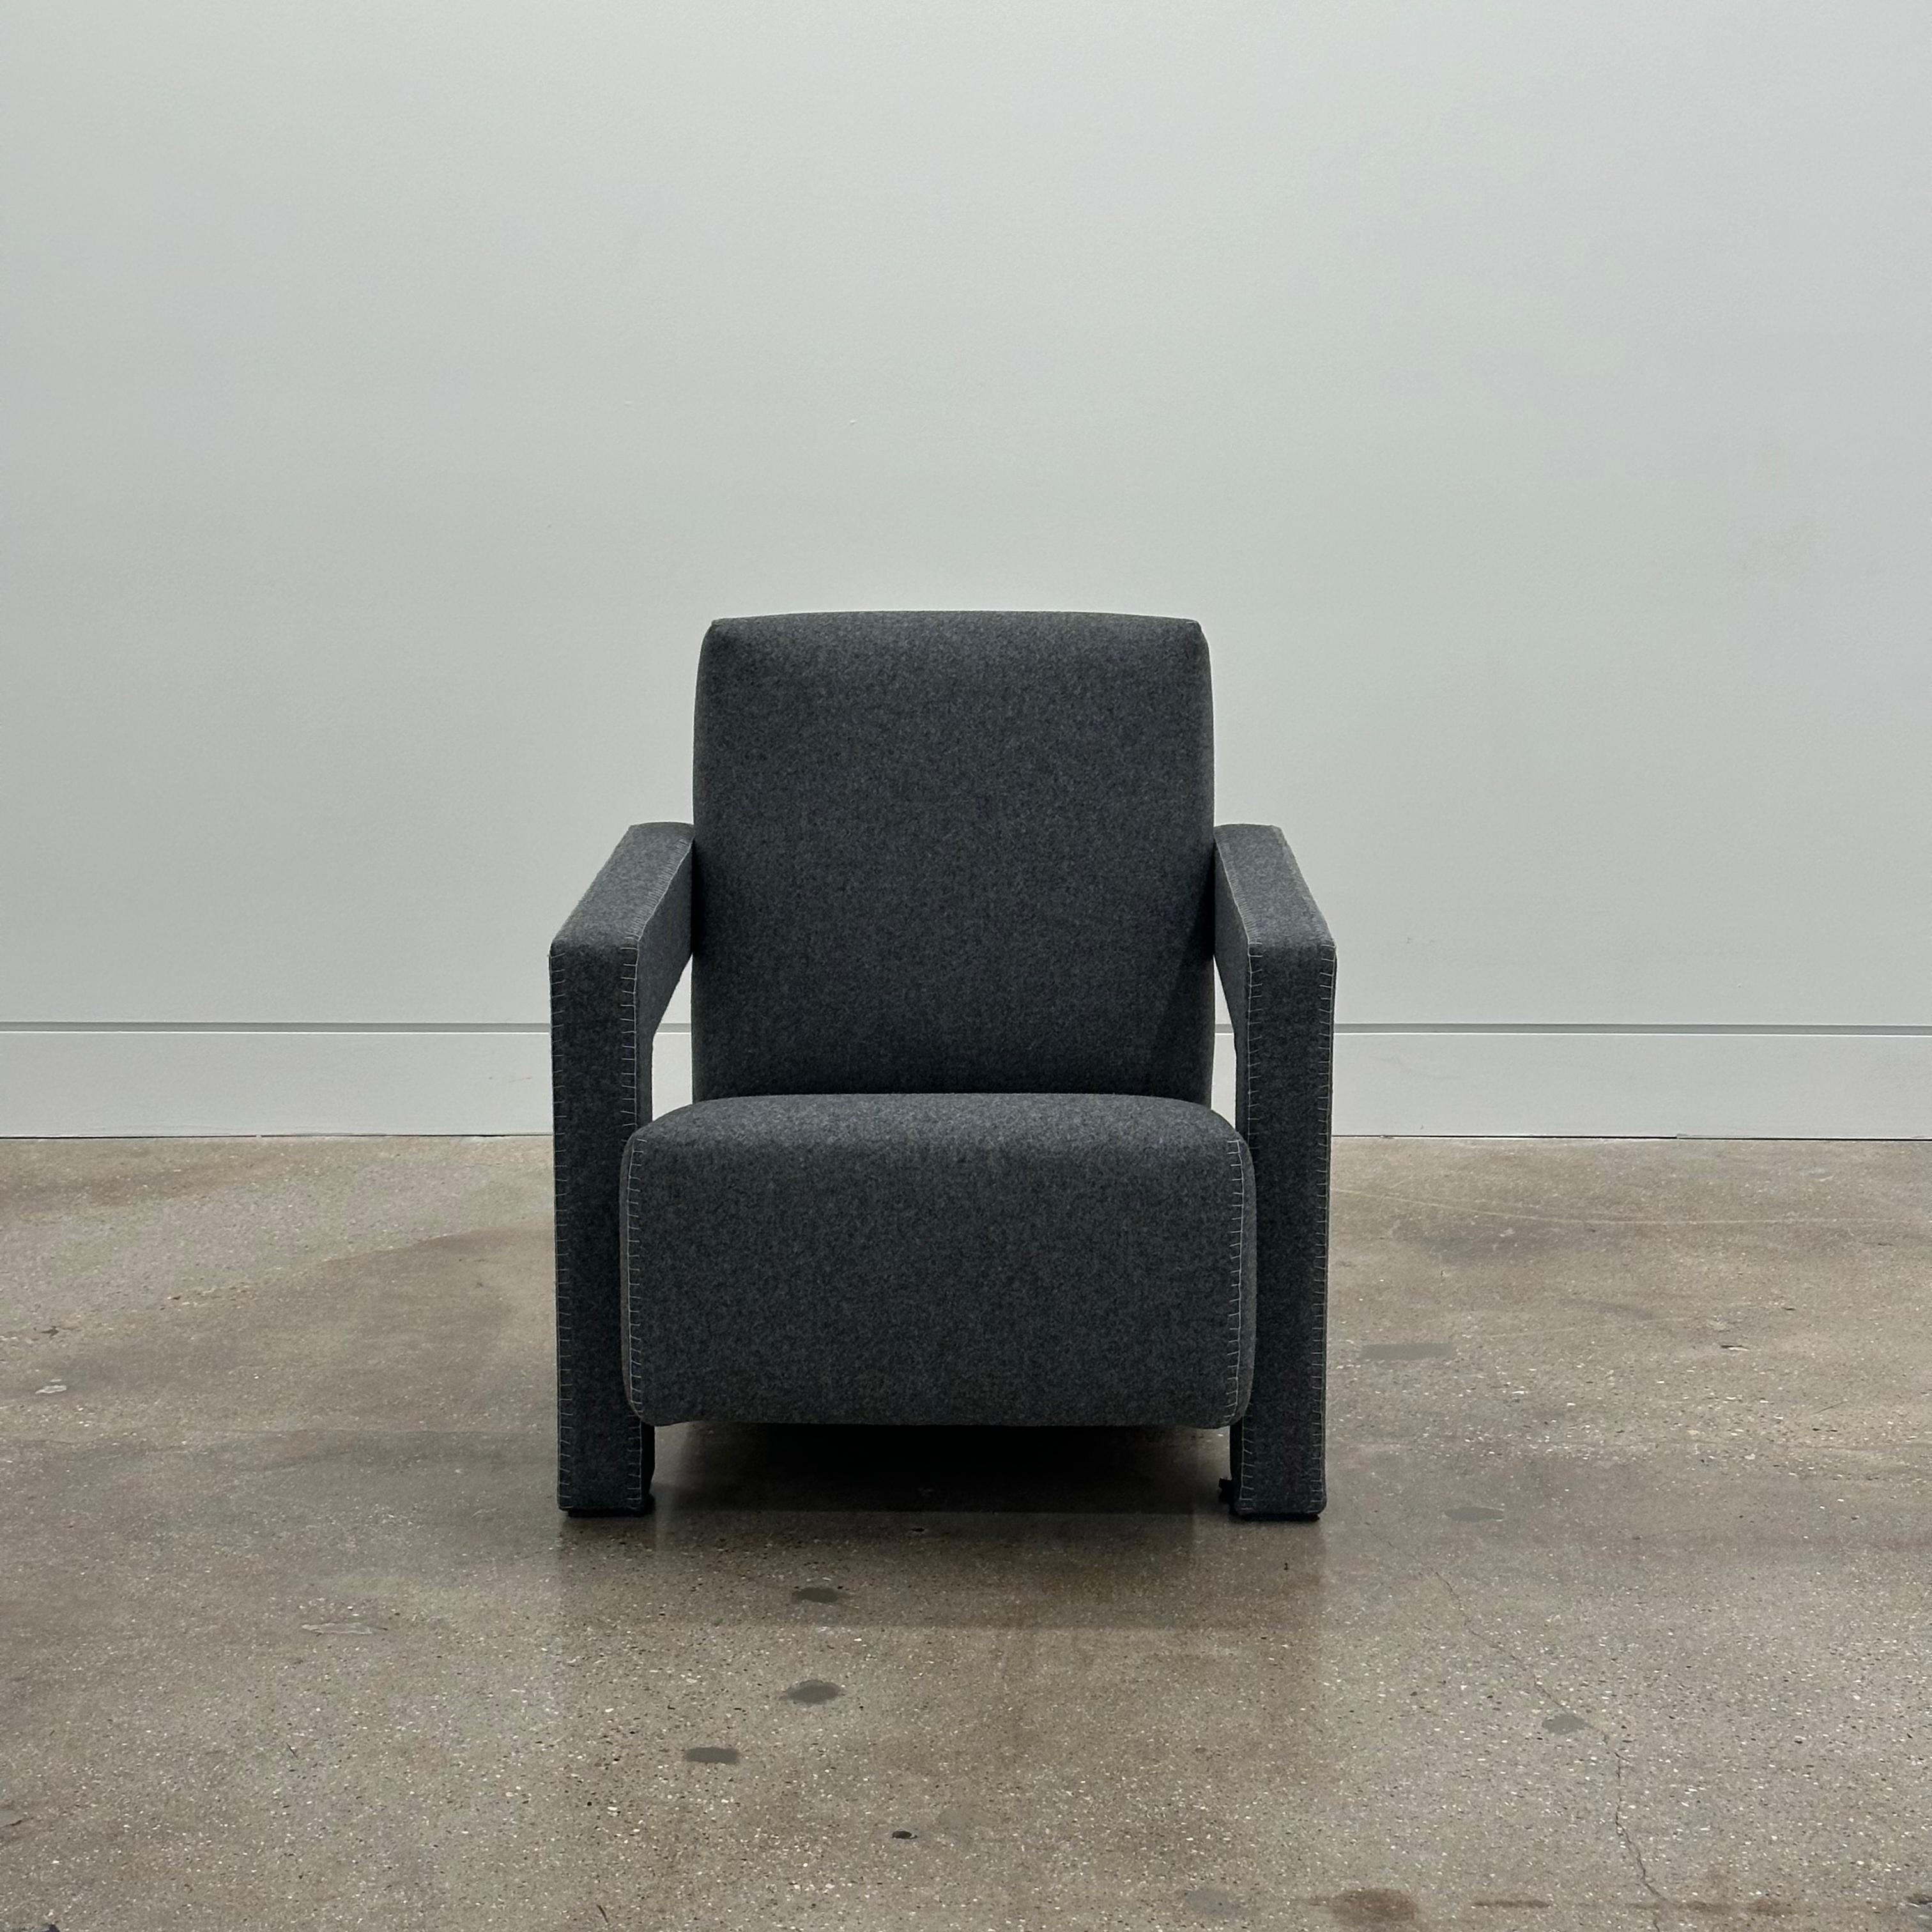 Sessel, entworfen von Gerrit Thomas Rietveld im Jahr 1935. Der Utrecht-Sessel ist das überrationale Gesicht der neoplastischen Bewegung, die von Gerrit Rietveld 1935 entworfen wurde und in die Designgeschichte eingegangen ist. Professionell